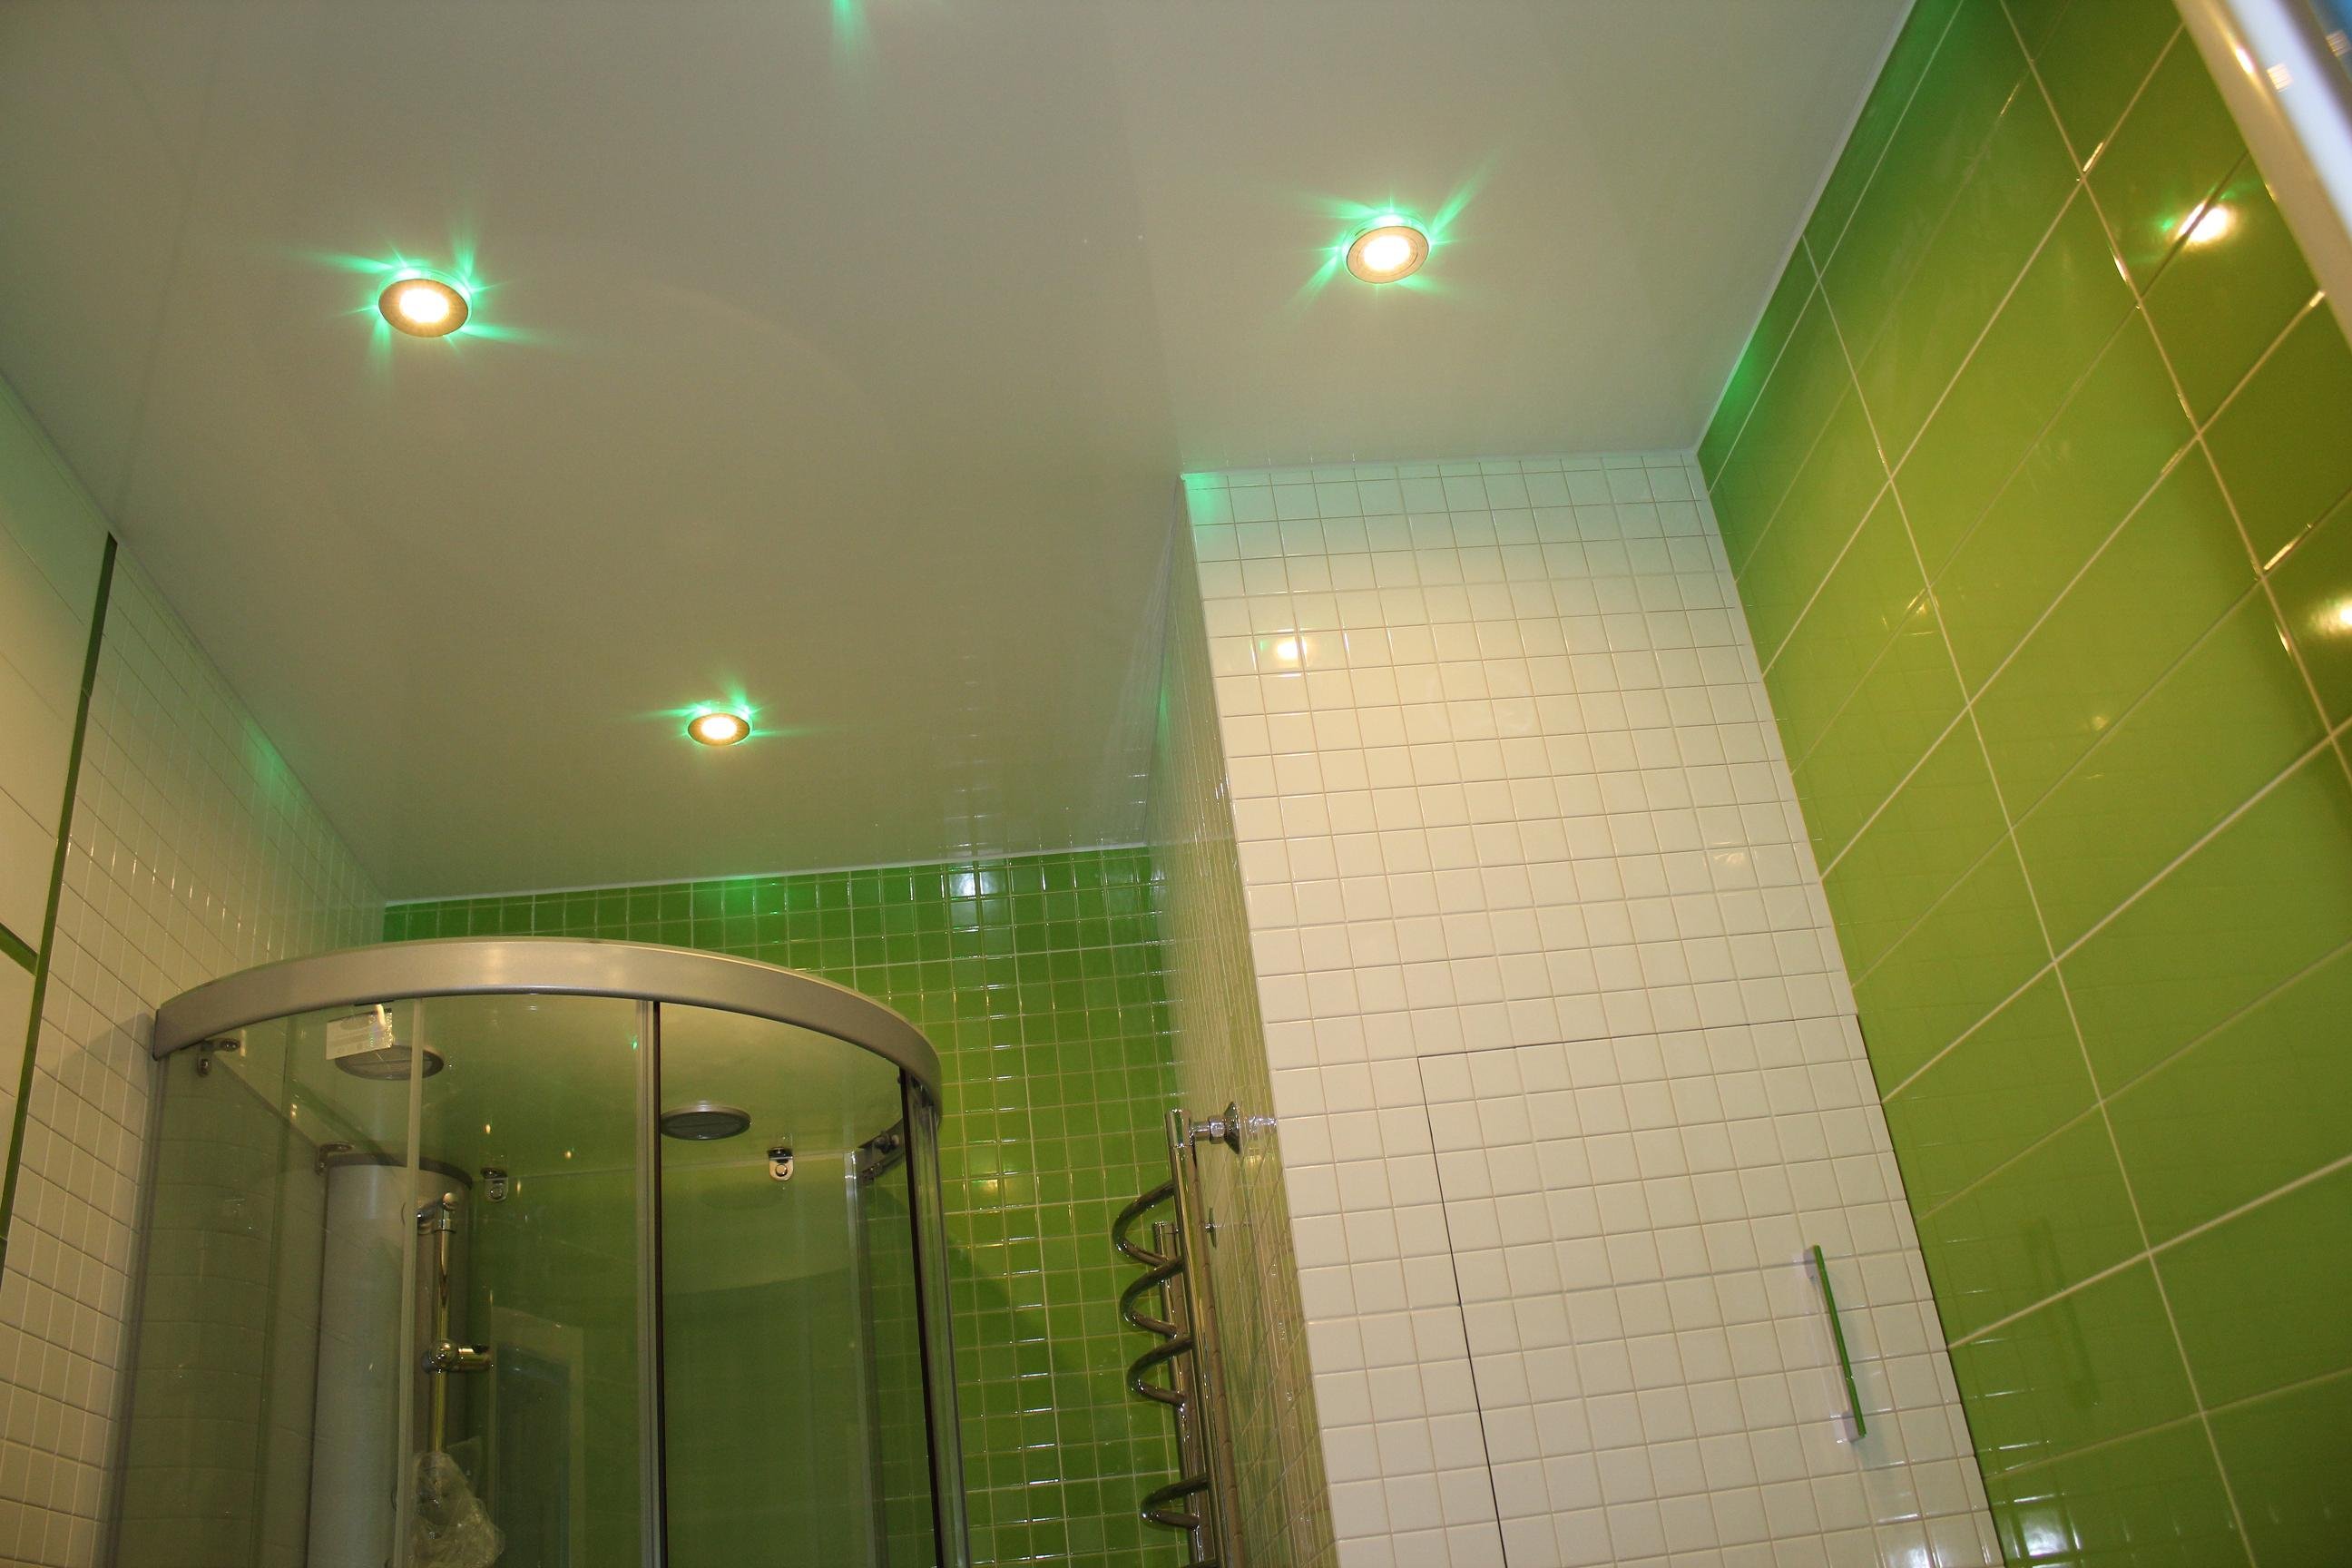 Какие делают потолки в ванной комнате фото